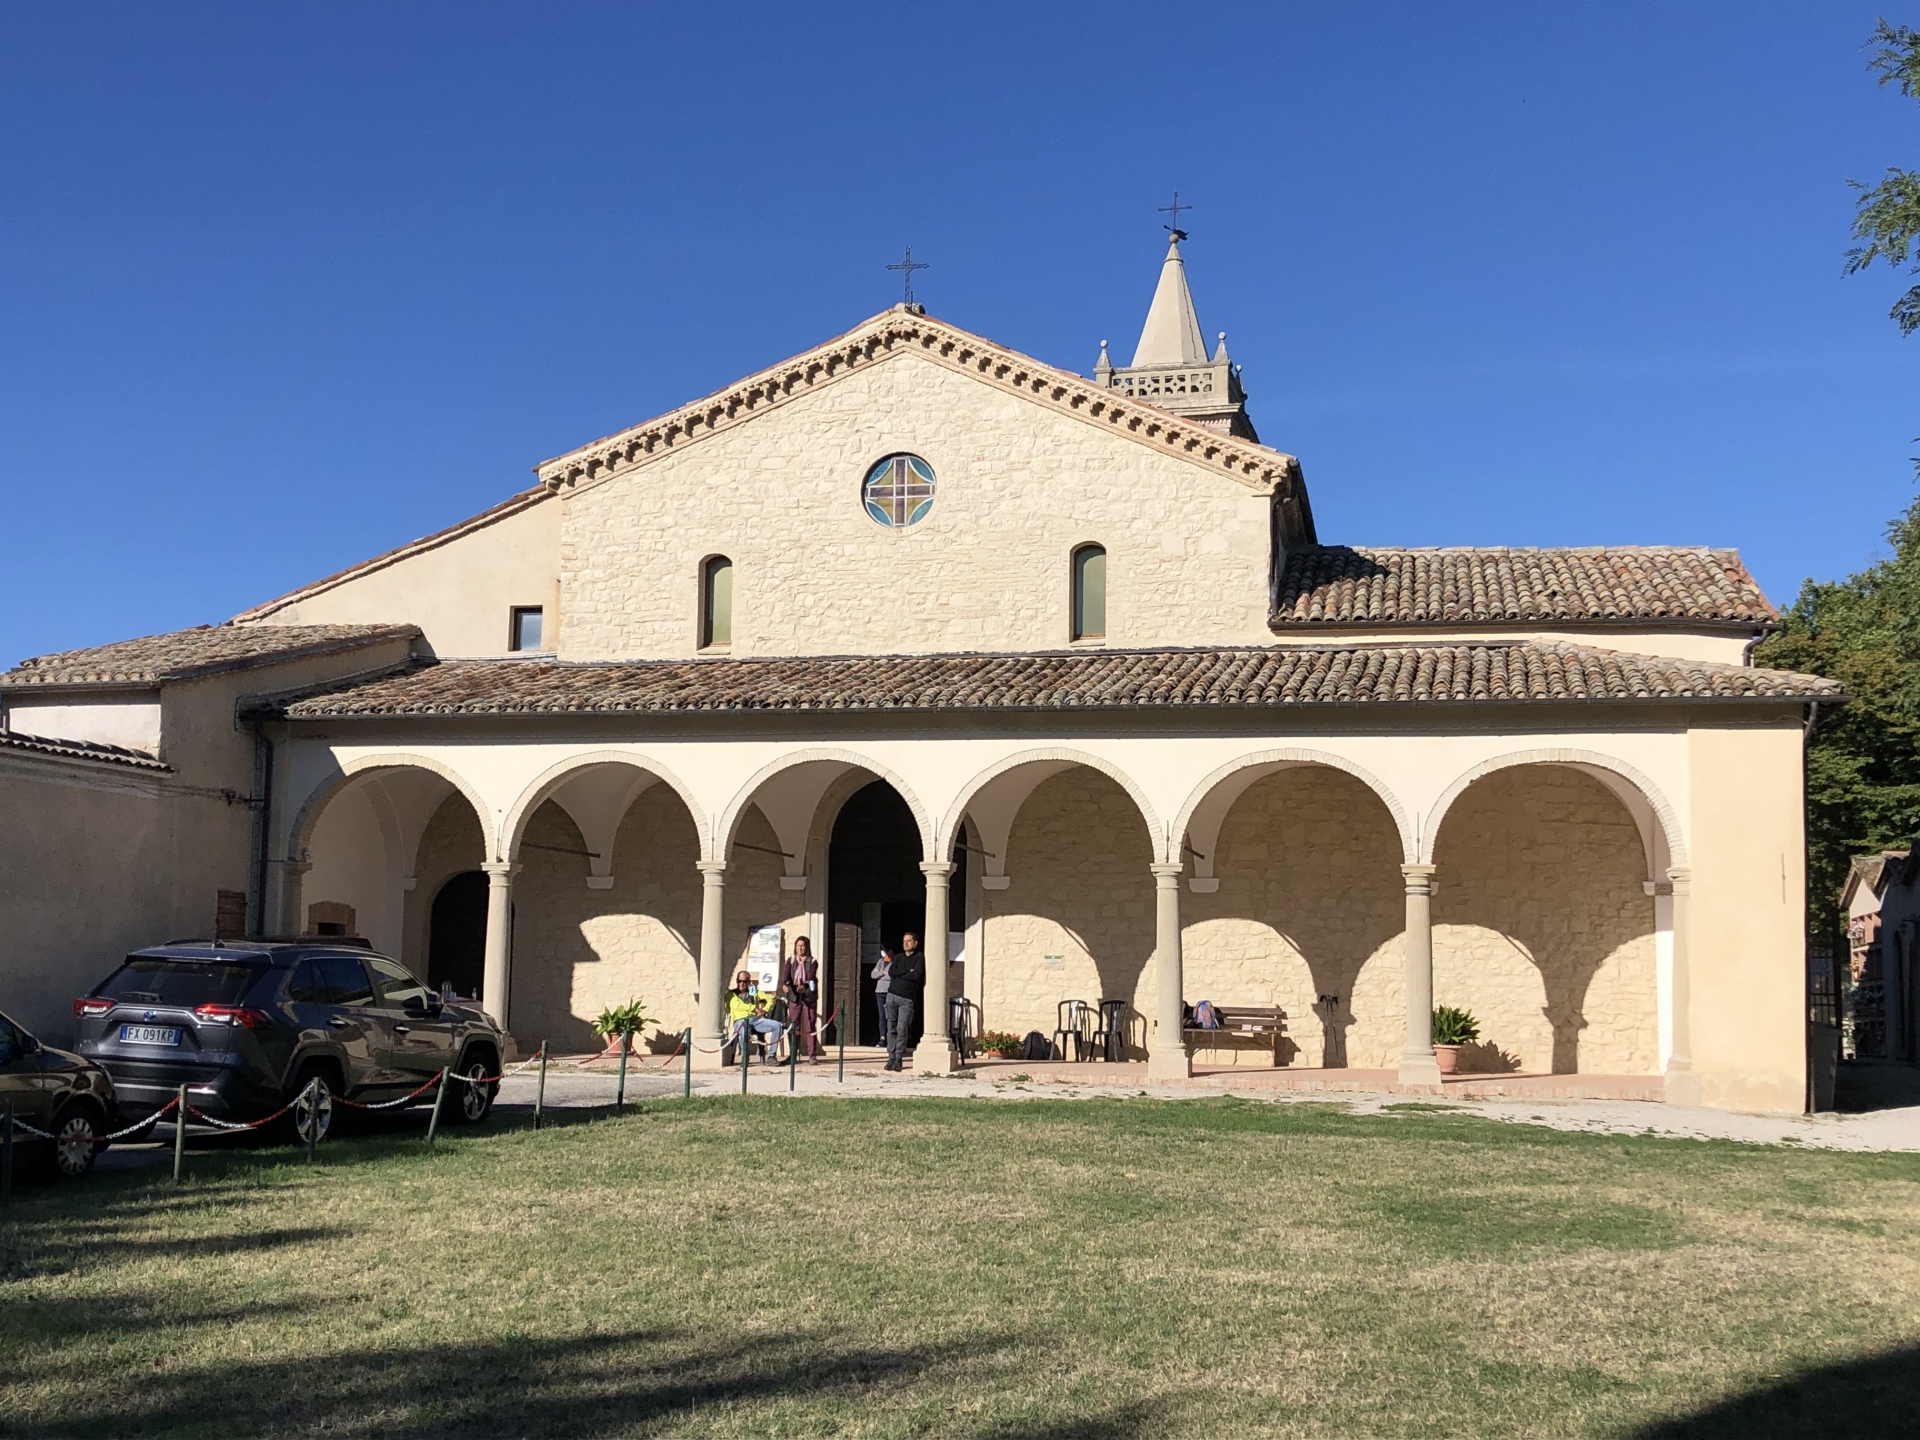 Convento di Sant'Antonio Abate in Montemaggio photos de Francesca Pasqualetti